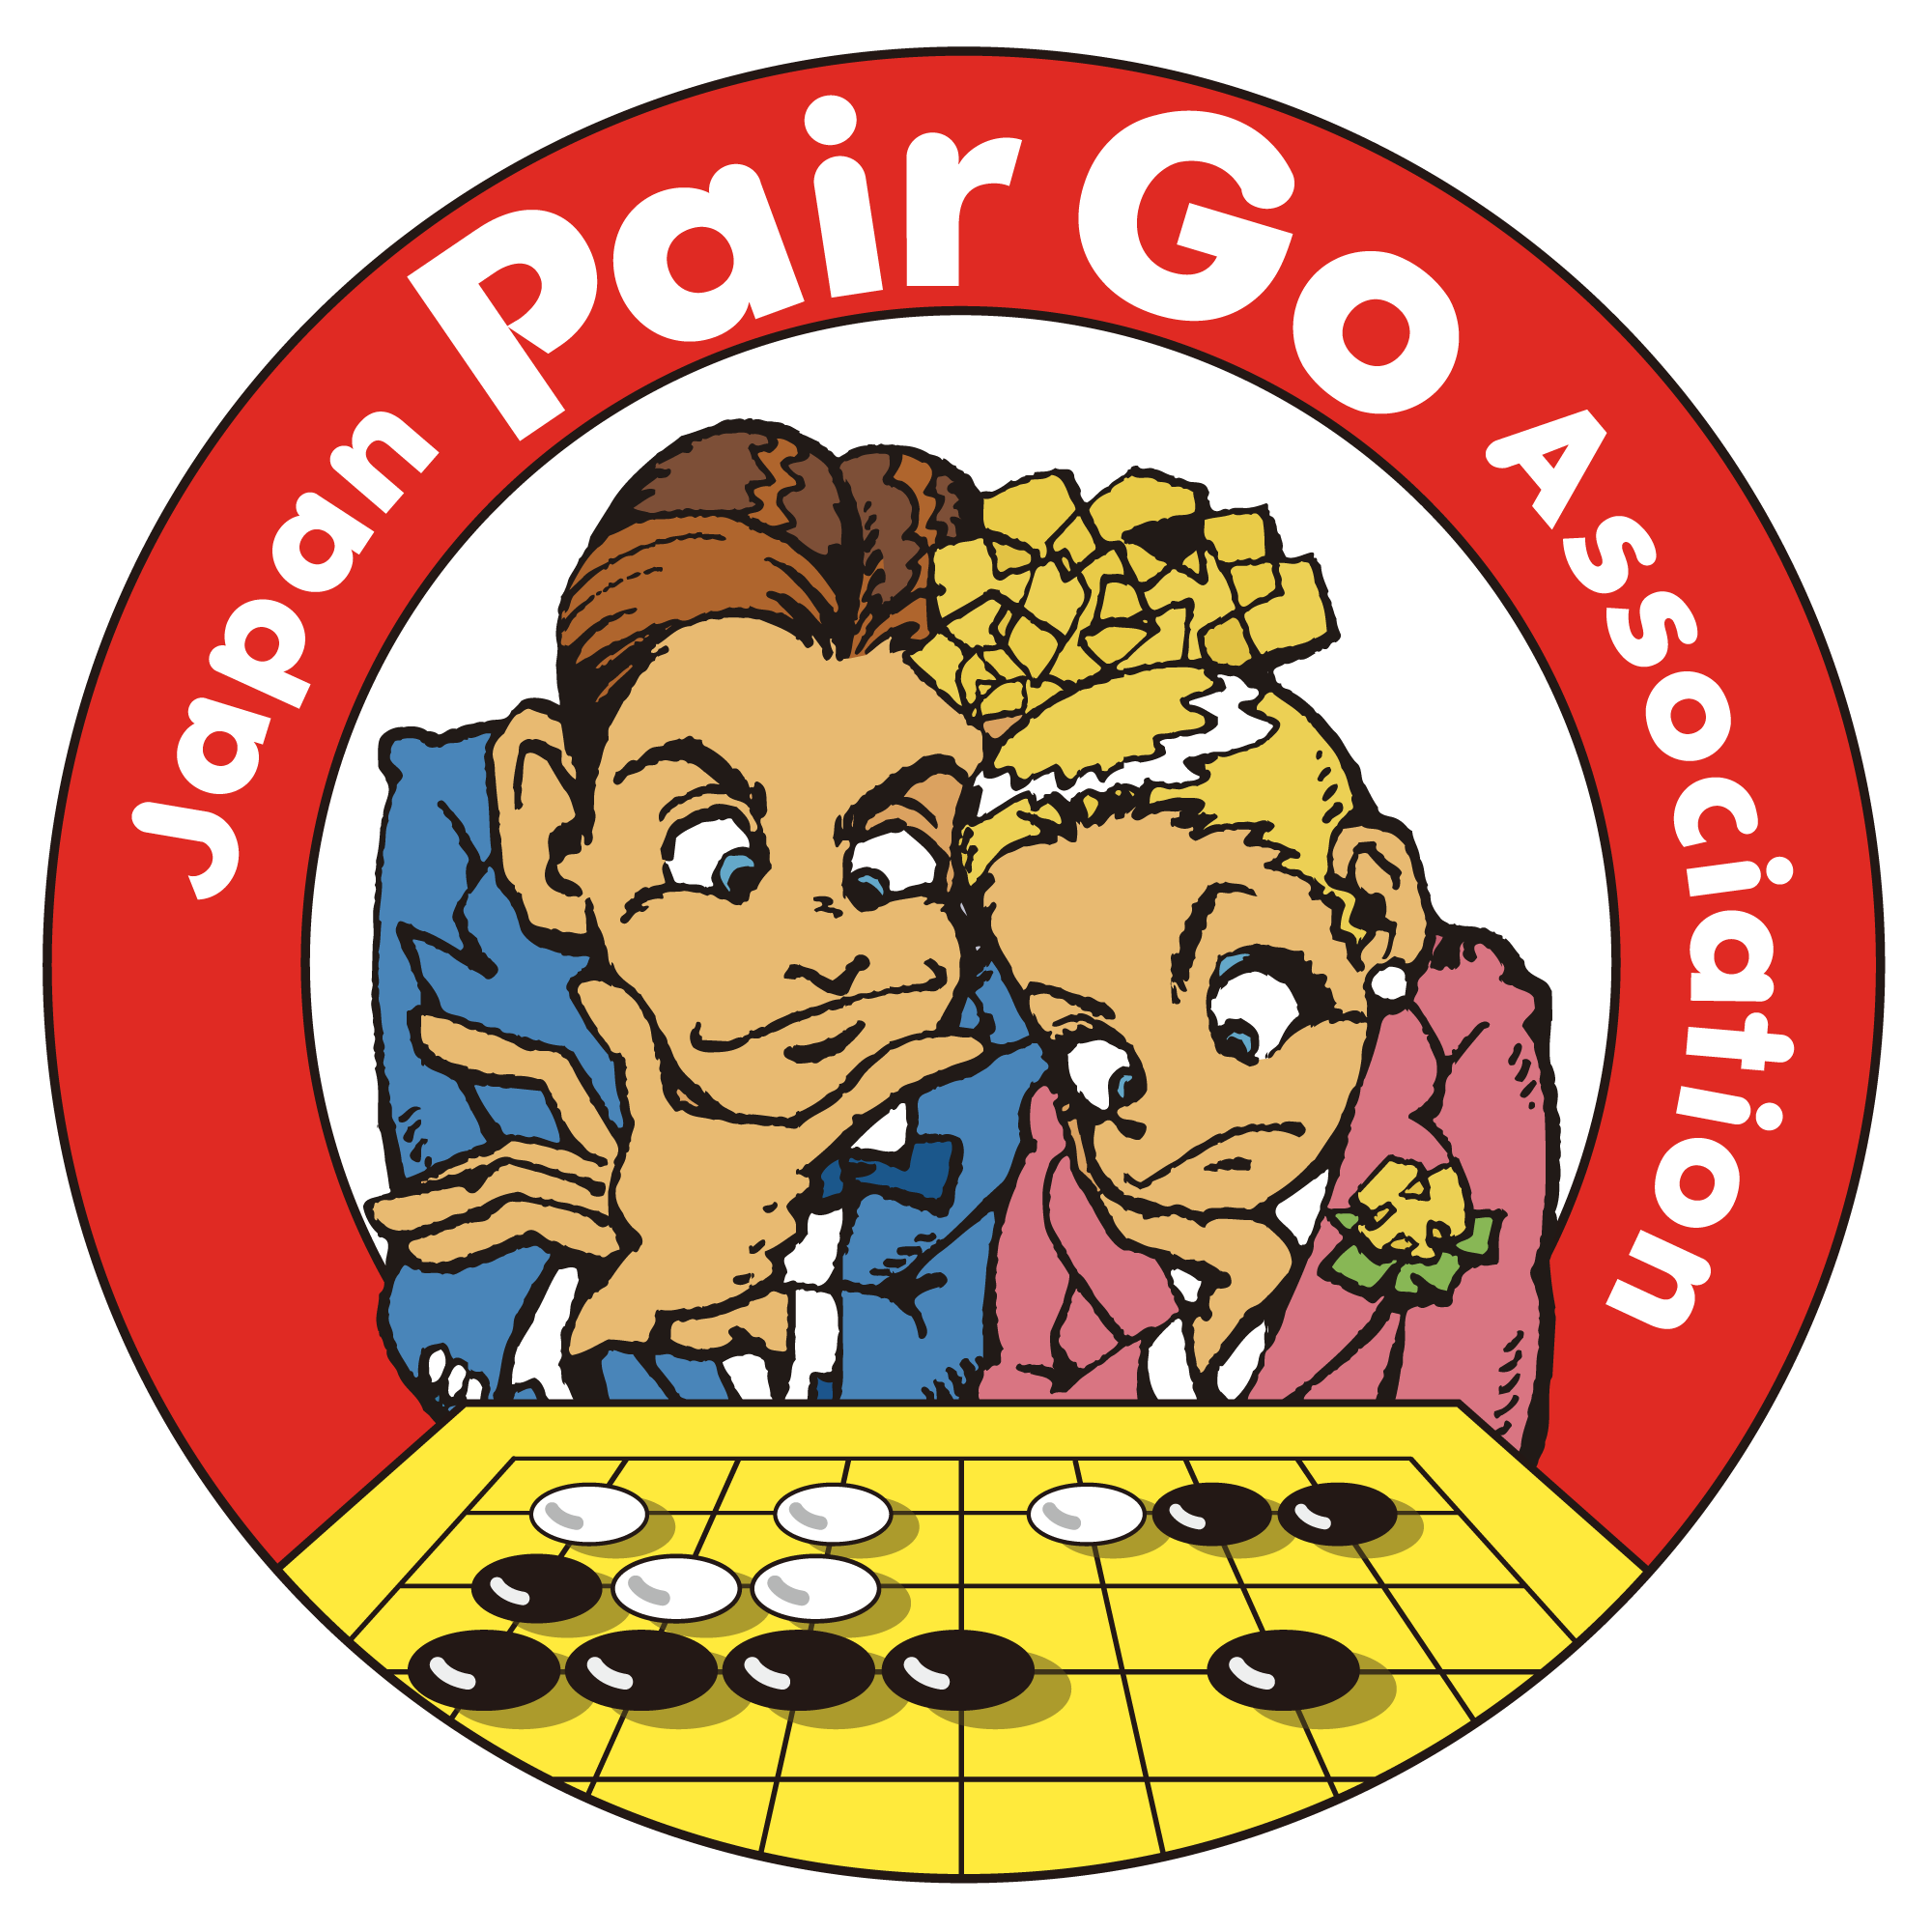 日本ペア碁協会は男女ペアで対局する「ペア碁」の普及活動をしています。1990年に日本で誕生したペア碁ですが、今ではPair Goとして世界中に広まっています。アマチュア対象の「国際アマチュア・ペア碁選手権大会」と有名プロ棋士による「プロ棋士ペア碁選手権」を主催しています。
写真、イラストの無断使用はご遠慮ください